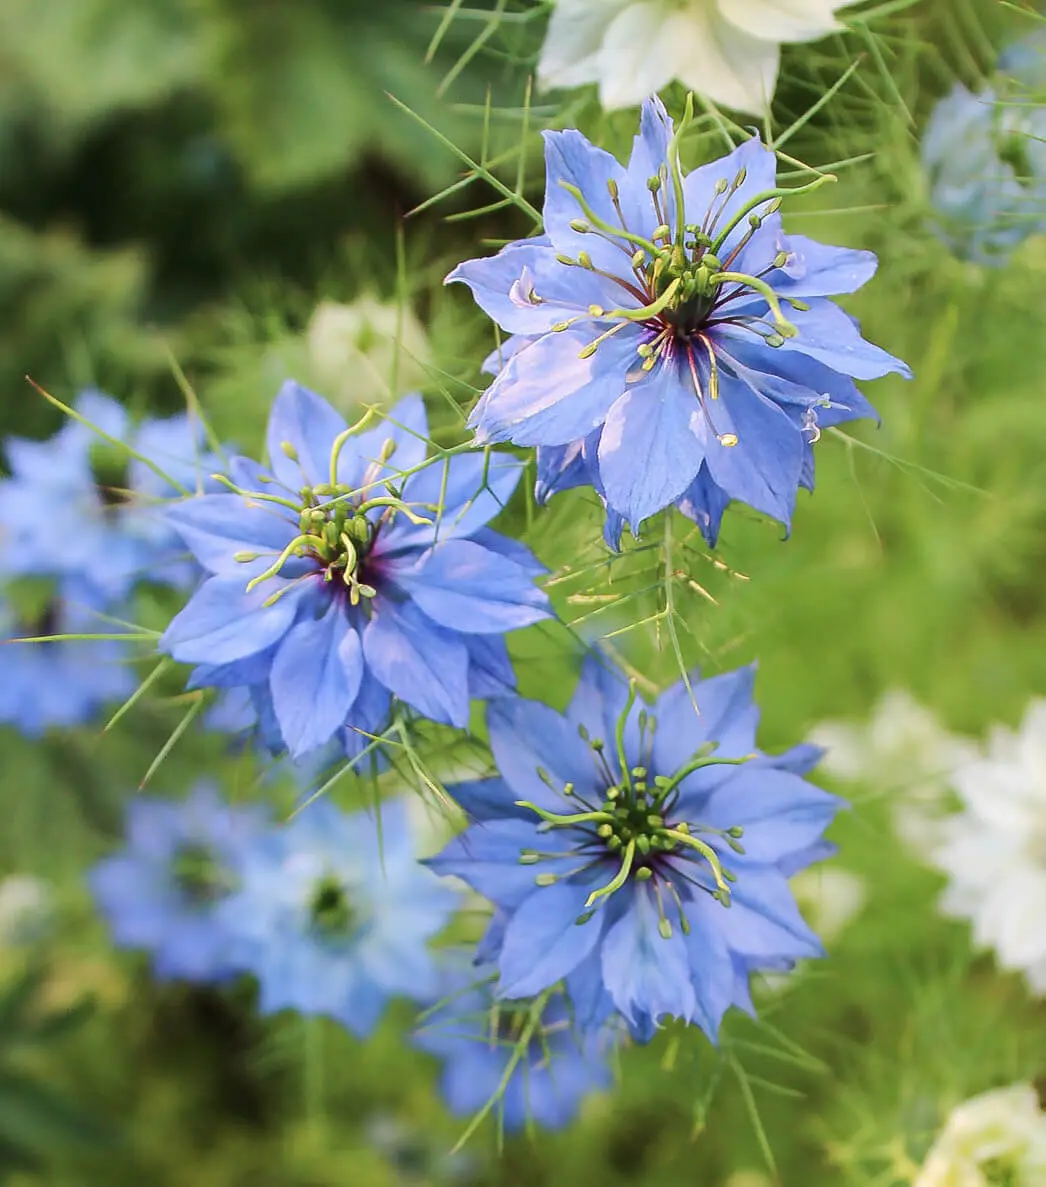 fiori azzurri - Come si chiama il fiore blu